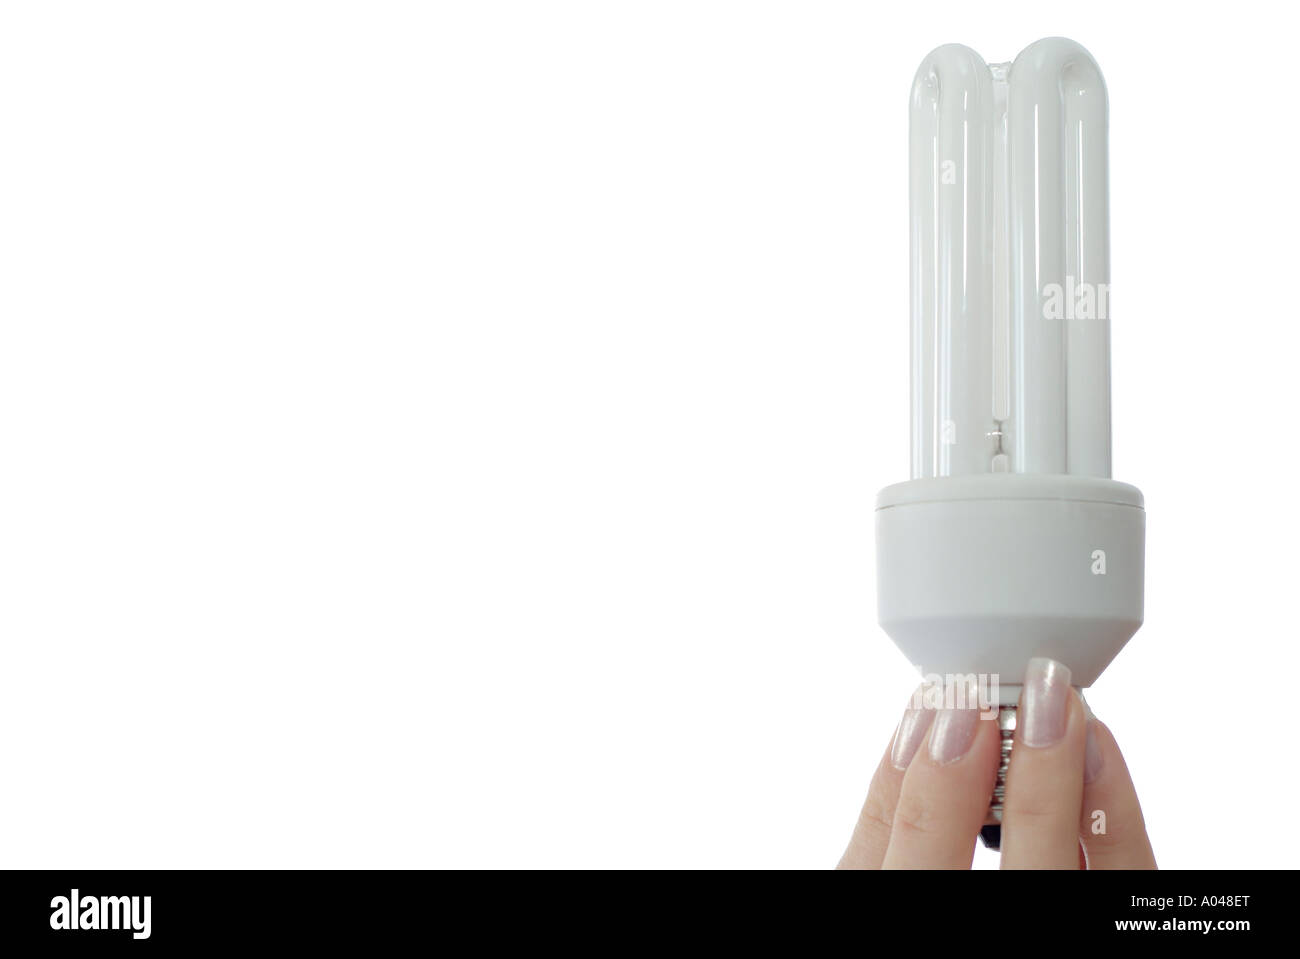 Energiesparende Glühbirne Held zwischen den Fingern des Weibchens eine umweltfreundliche Alternative zu herkömmlichen Glühlampen Stockfoto